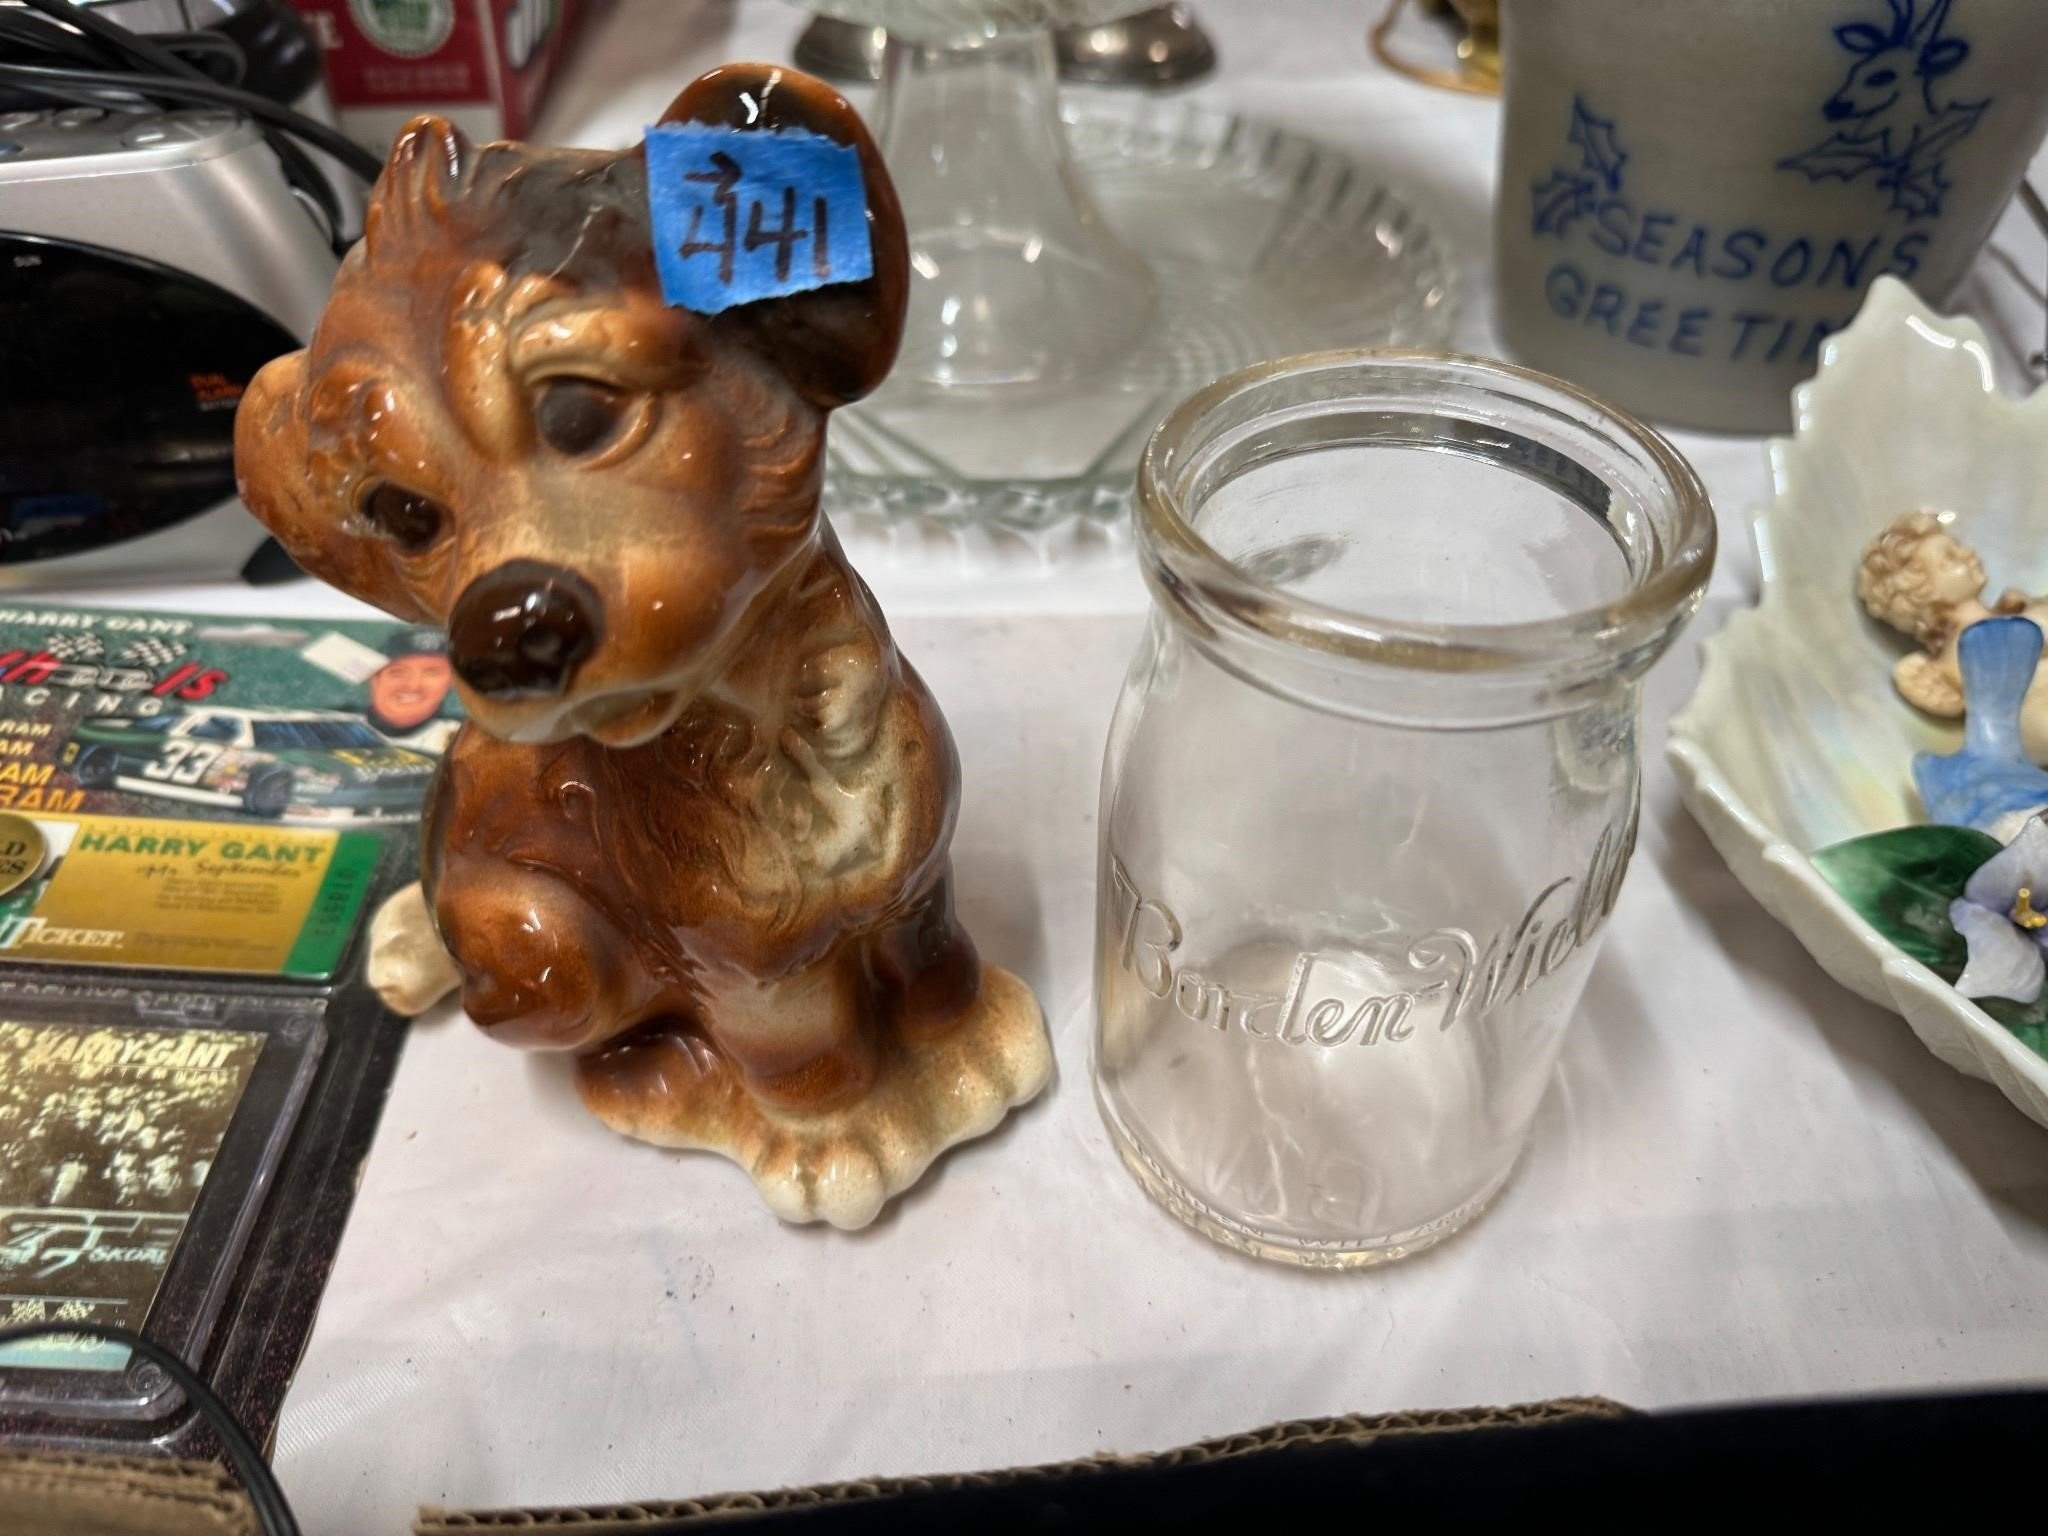 Borden-Wieland Cottage Cheese Jar, Dog